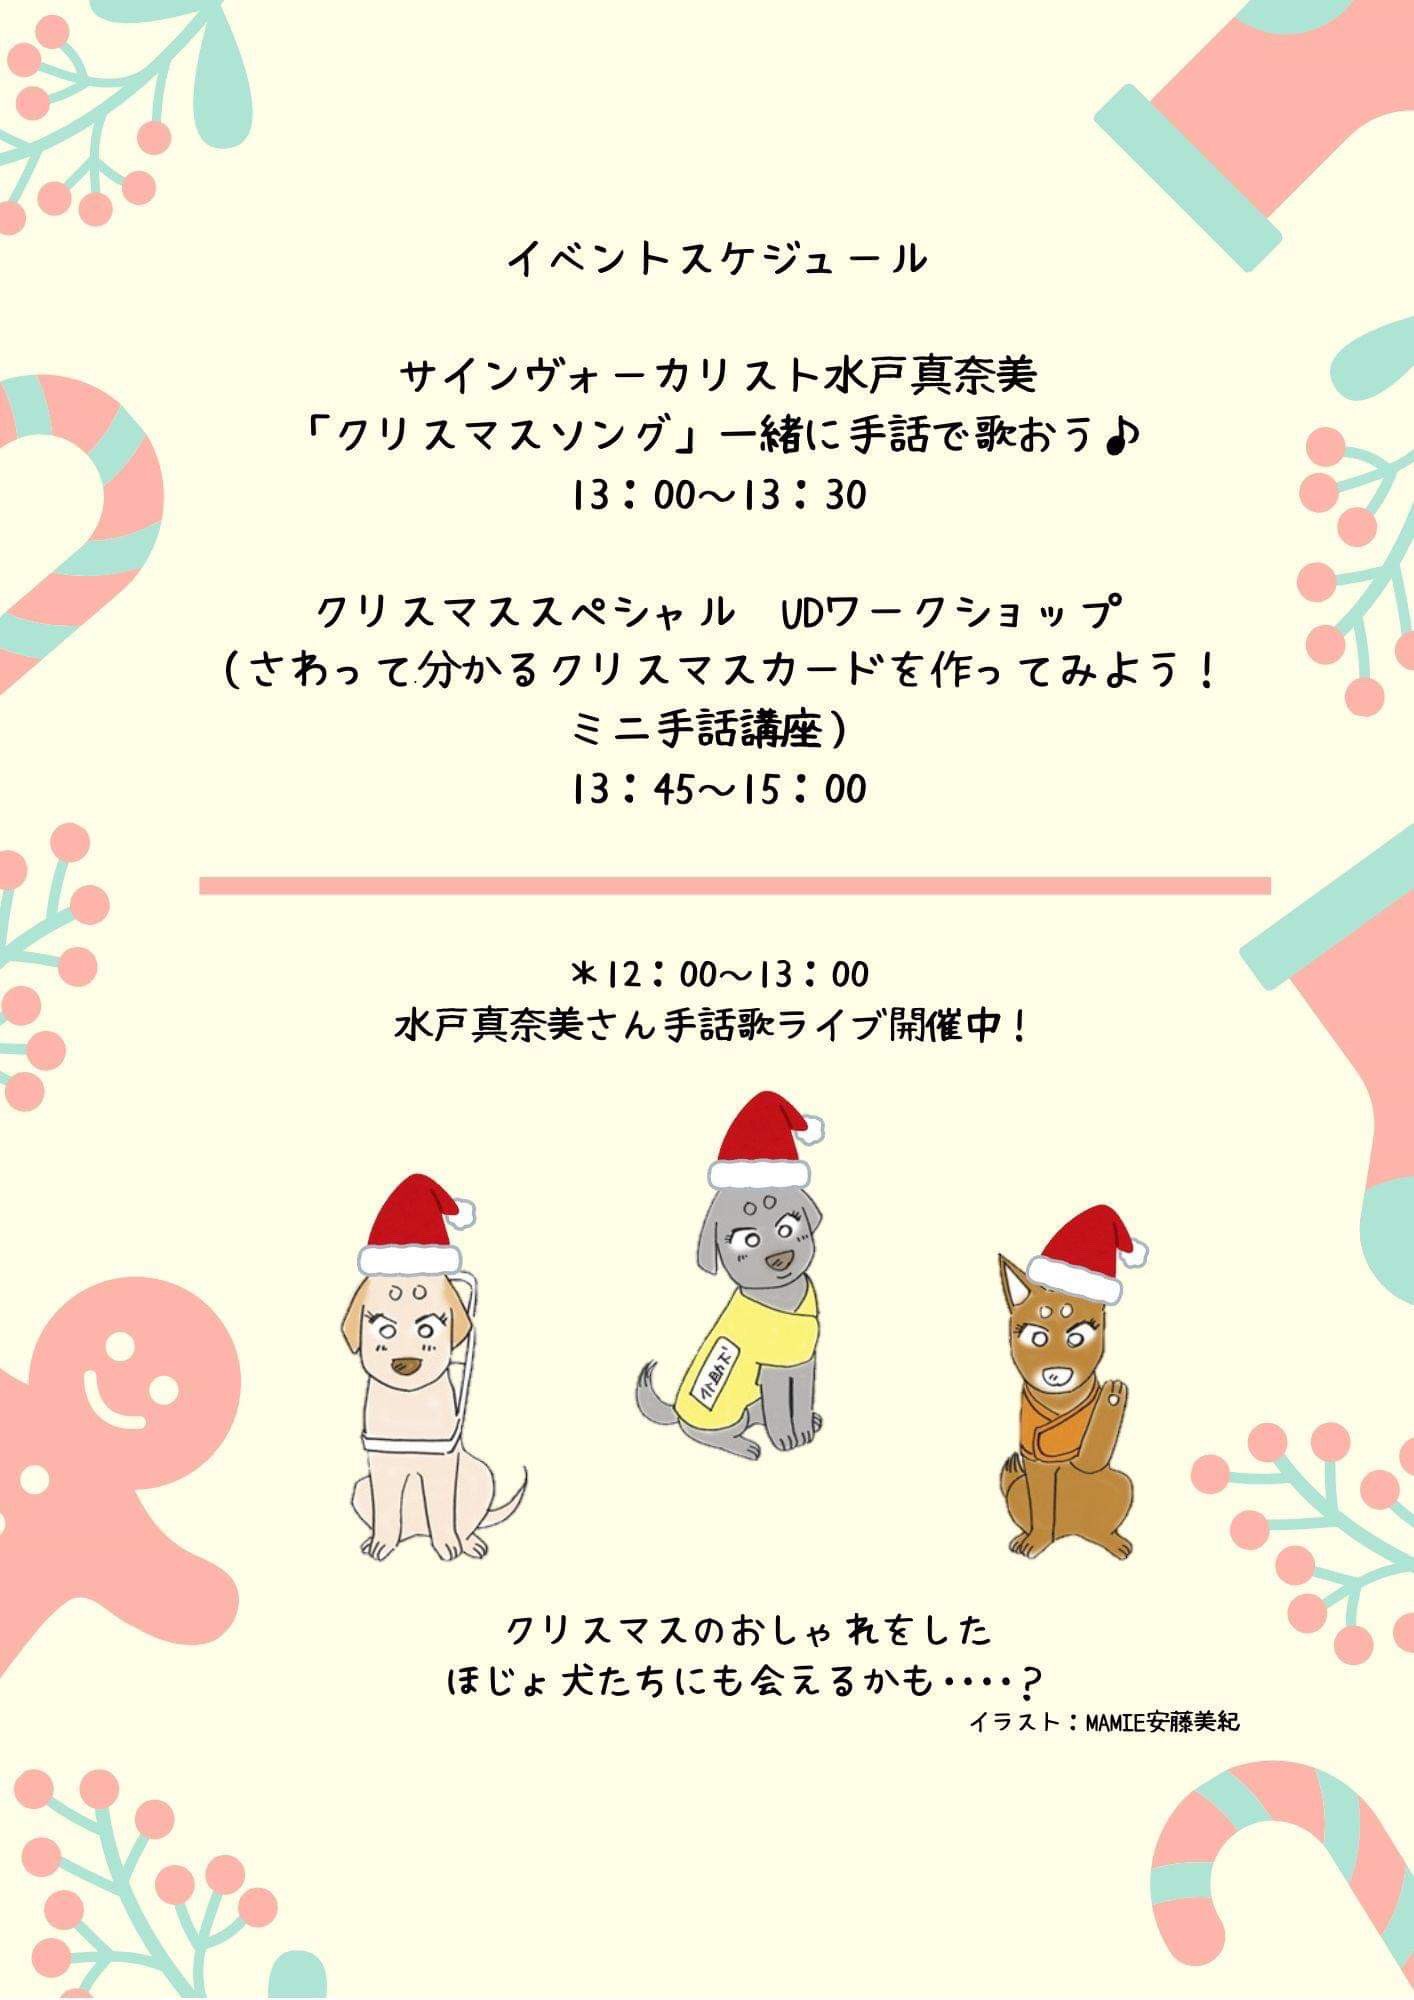 日本補助犬情報センター در توییتر さて いよいよ水曜日は 大人も子どもも ほじょ犬クリスマス ほじょ犬達と一緒に 手話歌で盛り上がったり 点字でクリスマスカード 作ったり 思いっきりud ユニバーサルデザイン で楽しもう